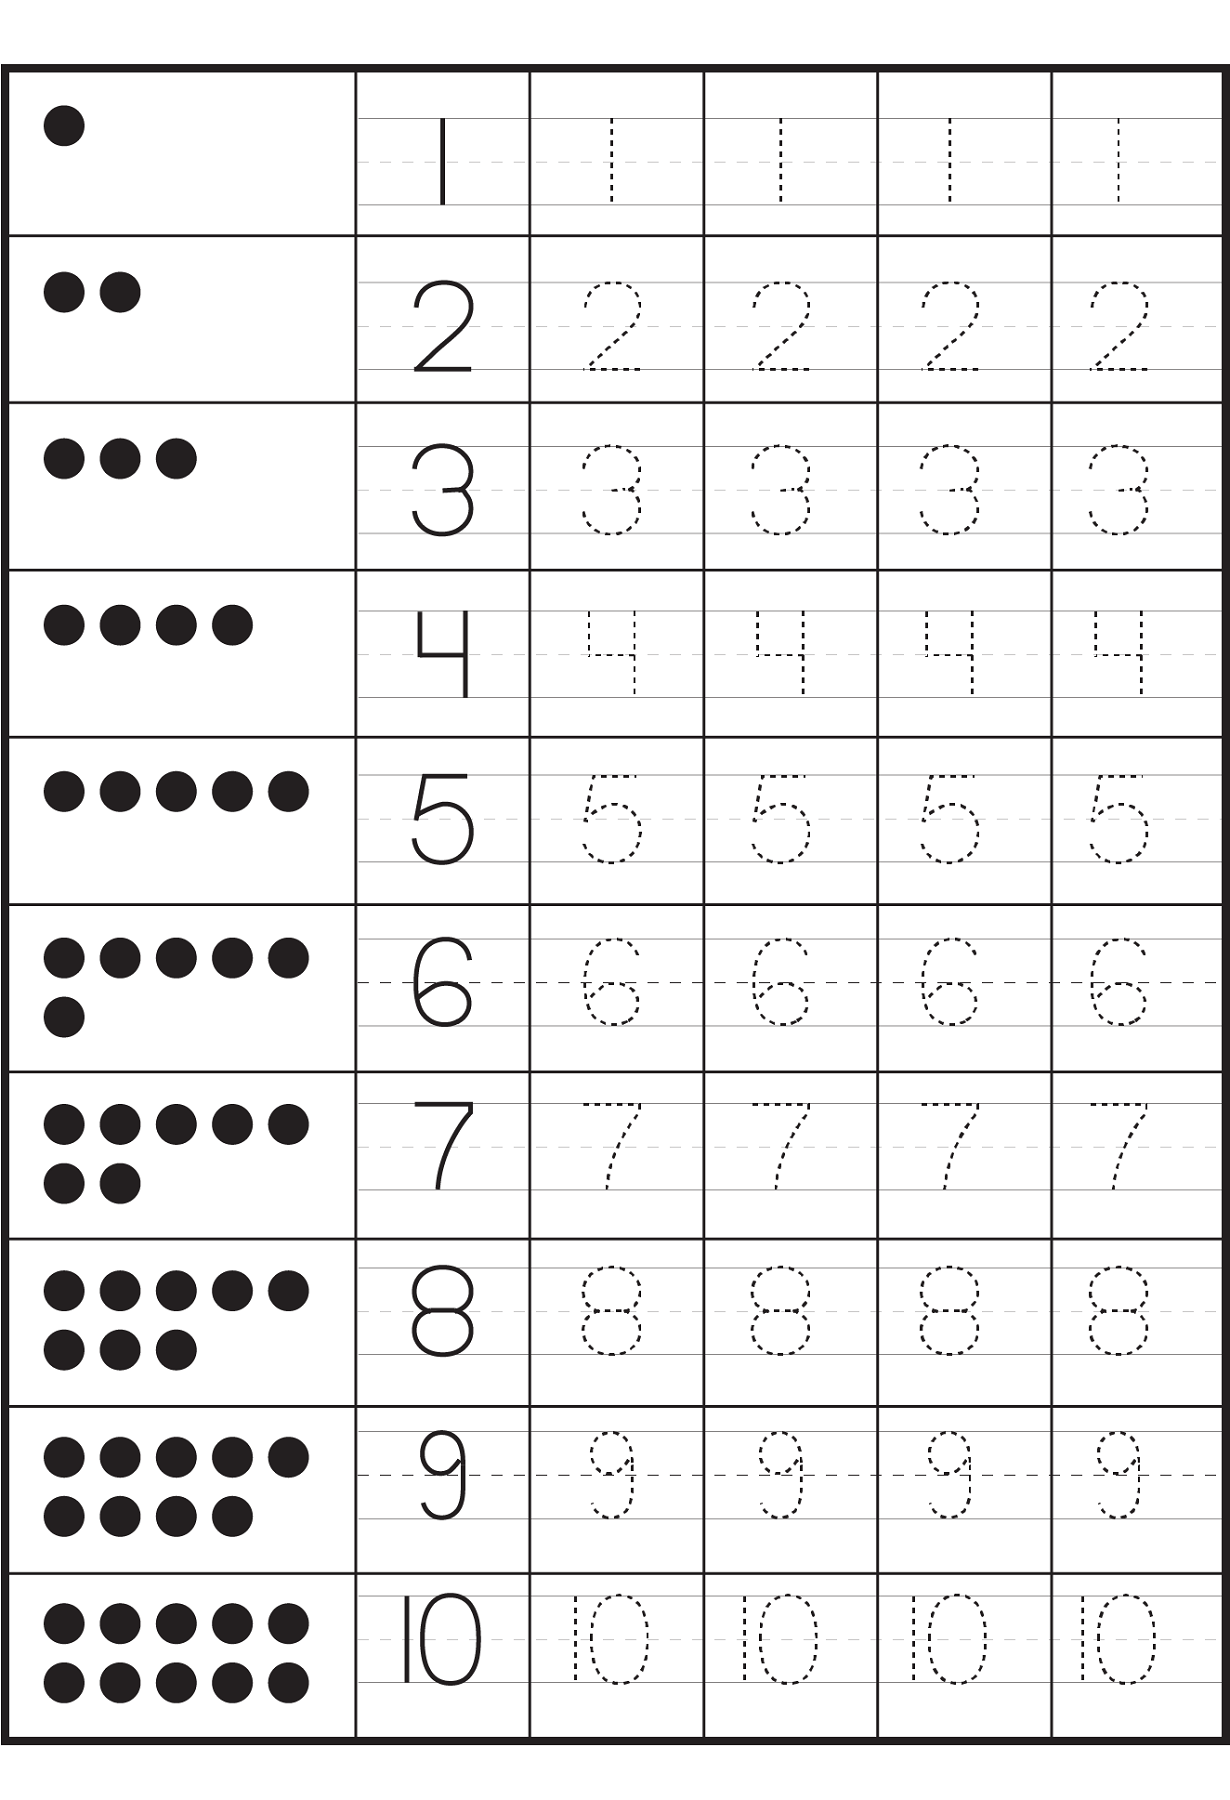 number-tracing-worksheets-for-kindergarten-1-10-ten-tracing-numbers